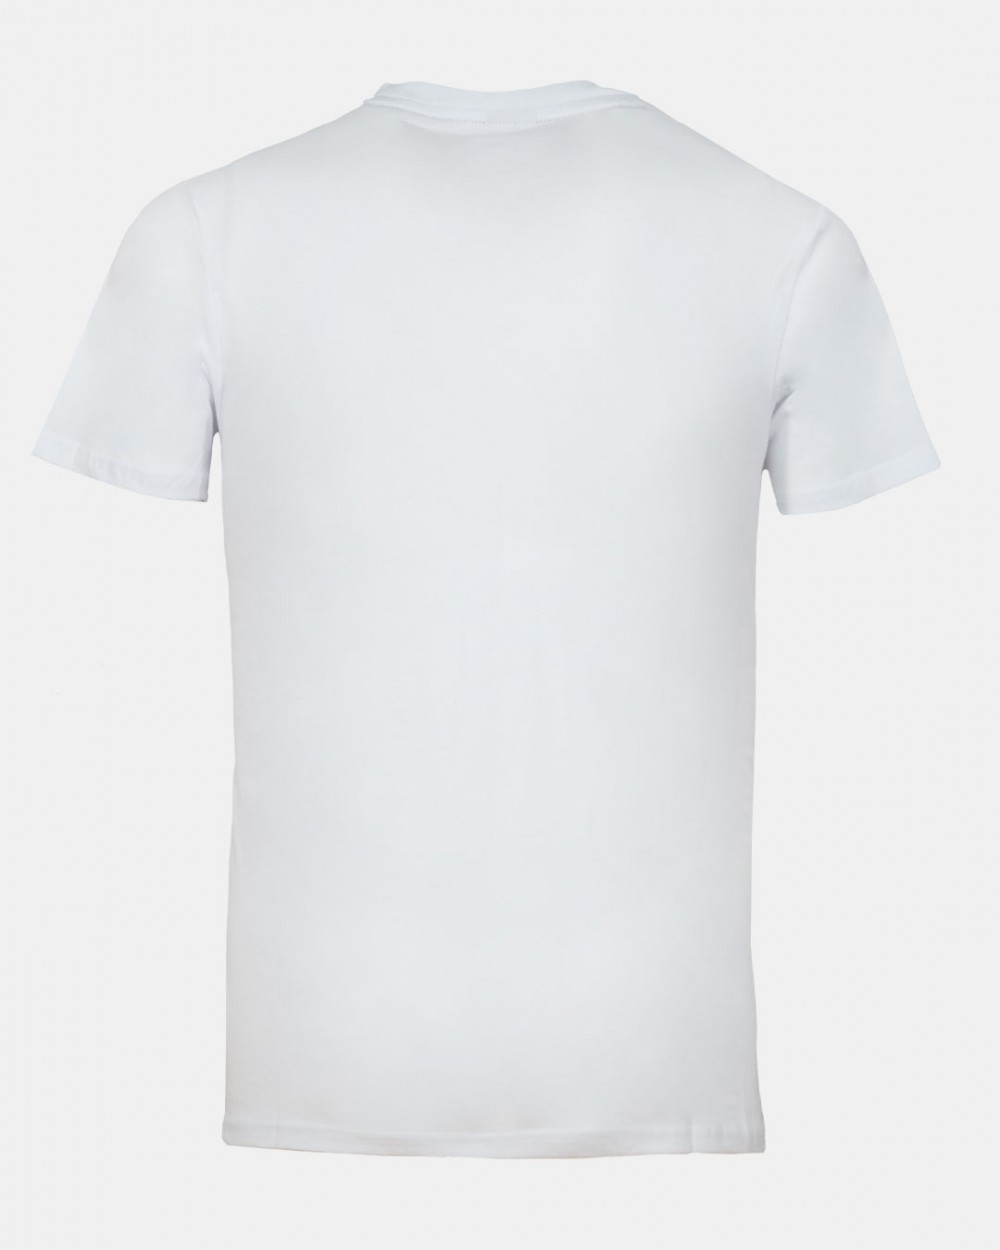 T-shirt bianca 1600 uomo logo rosso